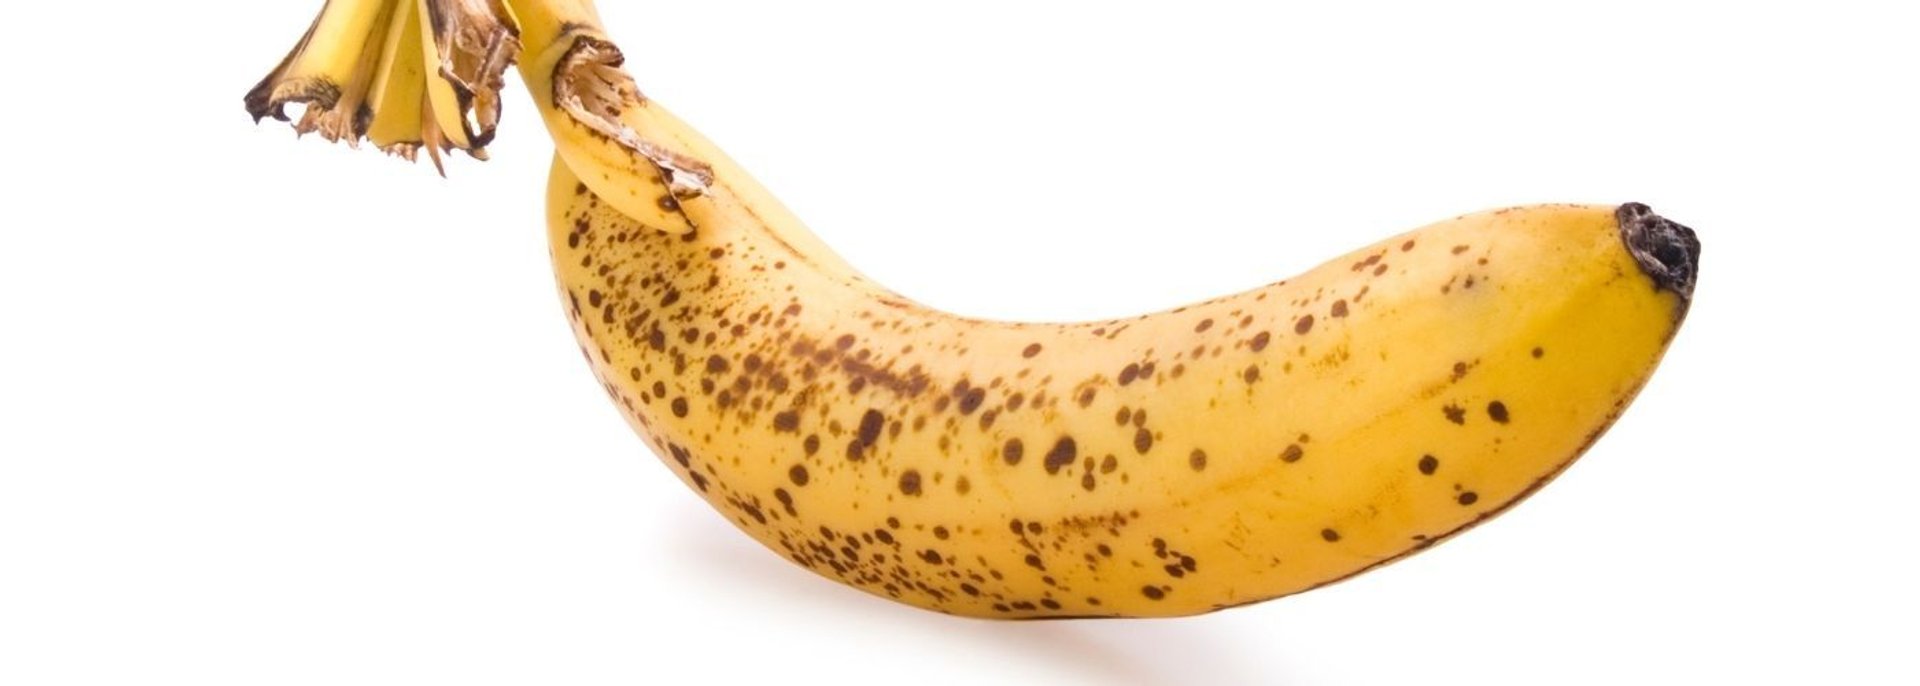 Ciemne banany są jadalne